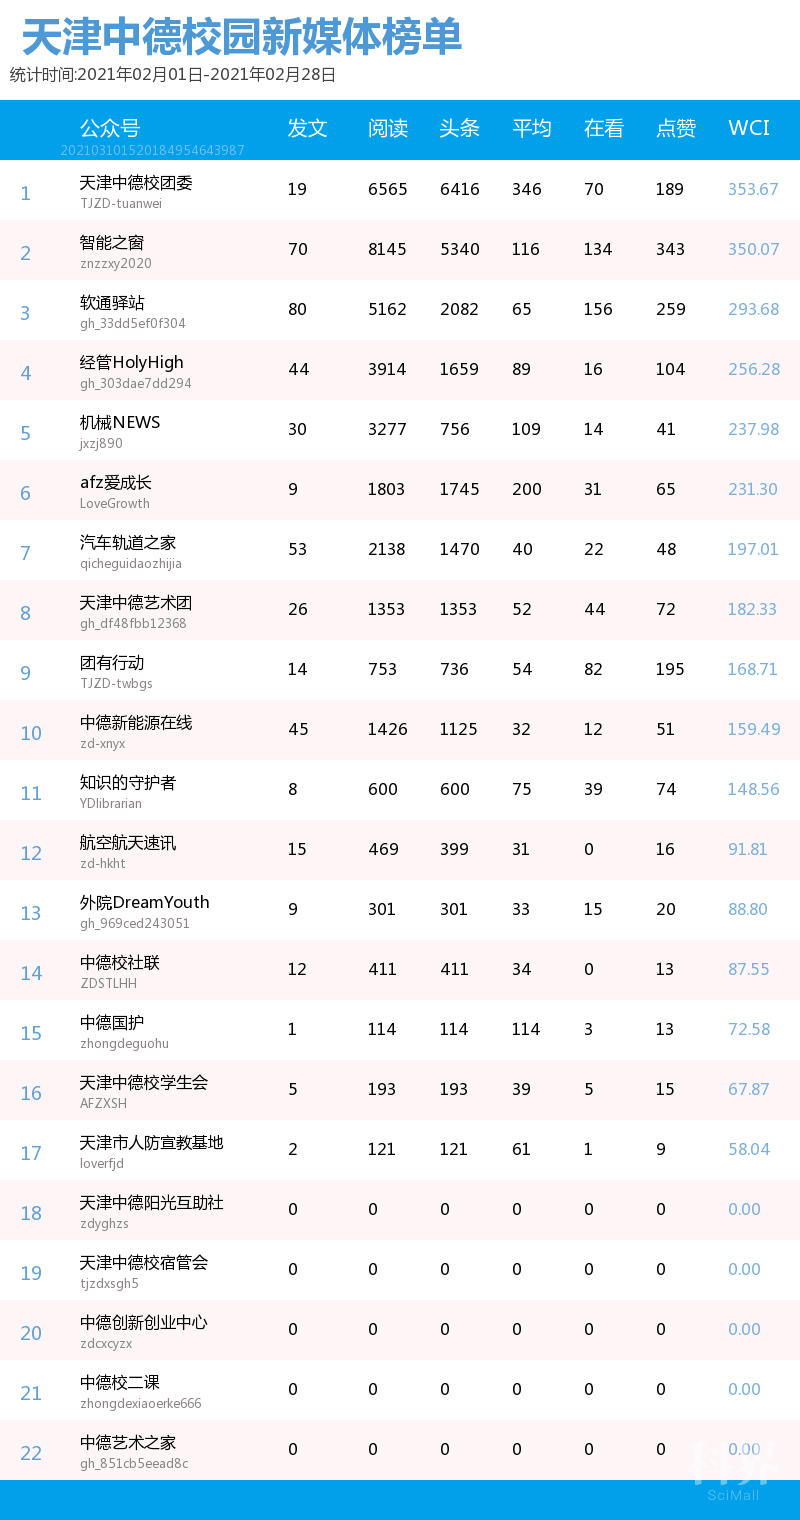 榜单| 天津中德应用技术大学校园微信公众号排行榜(2021年2月01日-2月